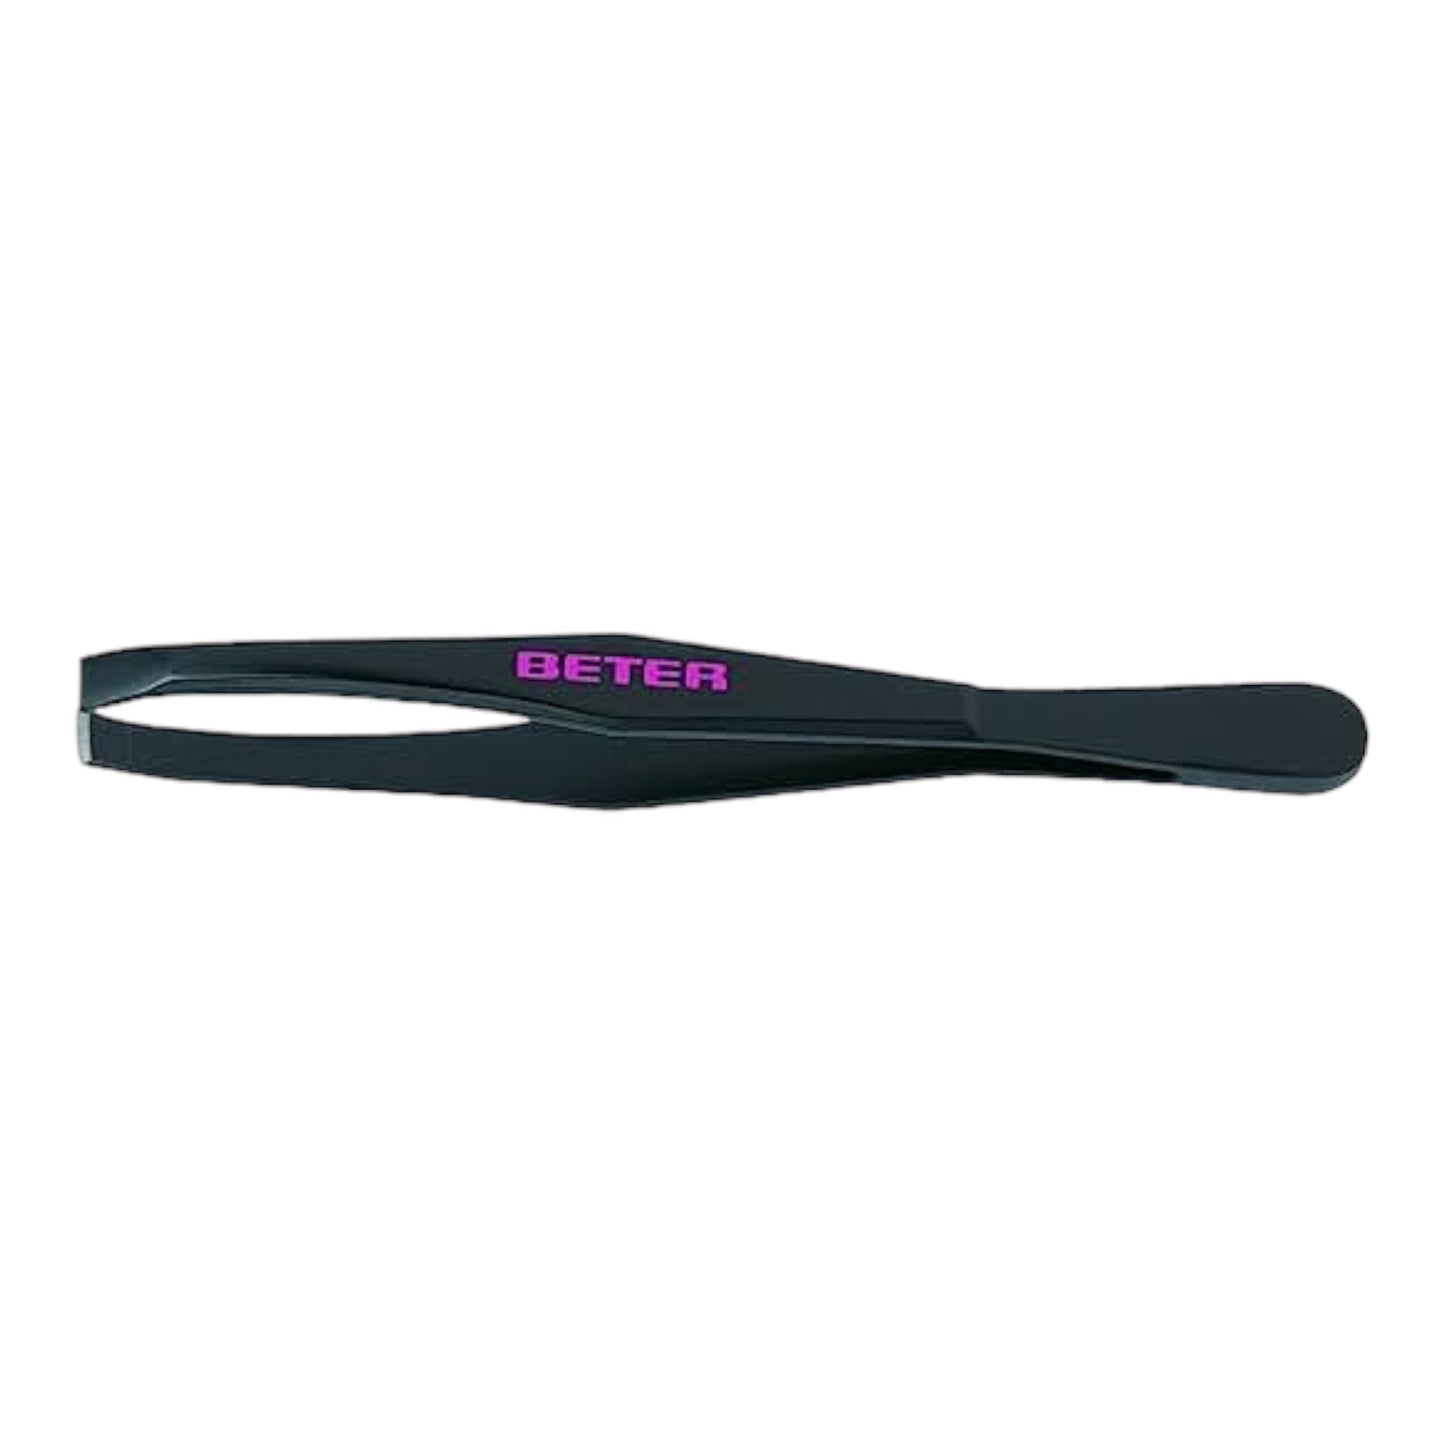 Beter- Pinza de depilar para cejas profesionales, color Negro. La pinza BETER original